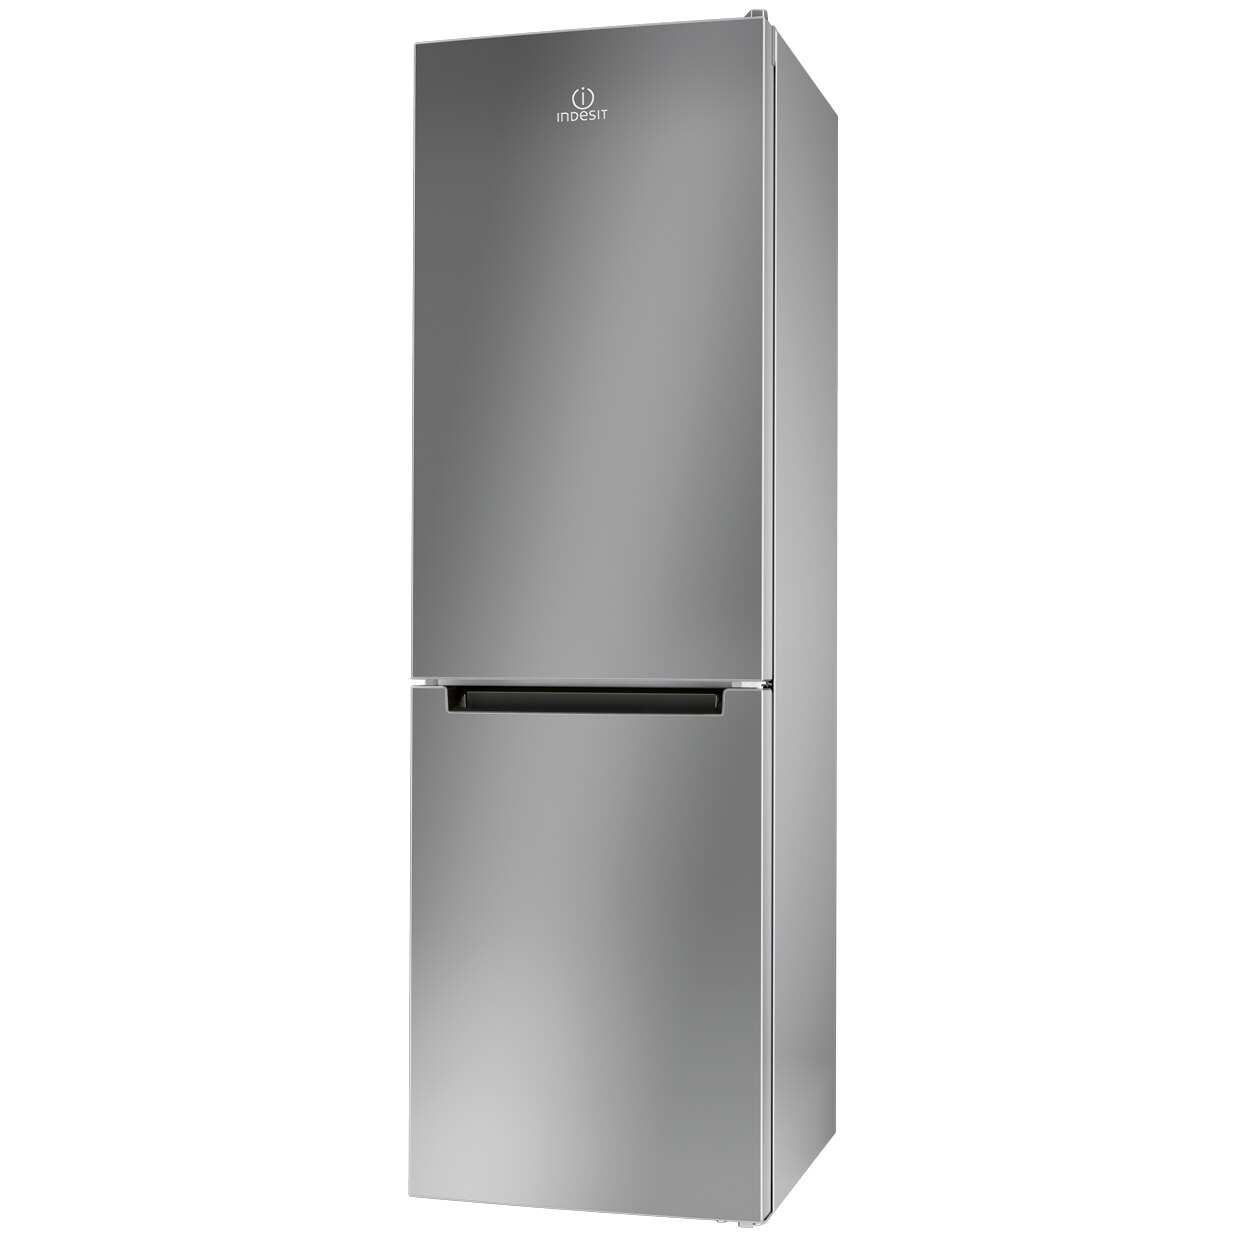 Хладилник Indesit LI80 FF1 S с обем от 301 л.